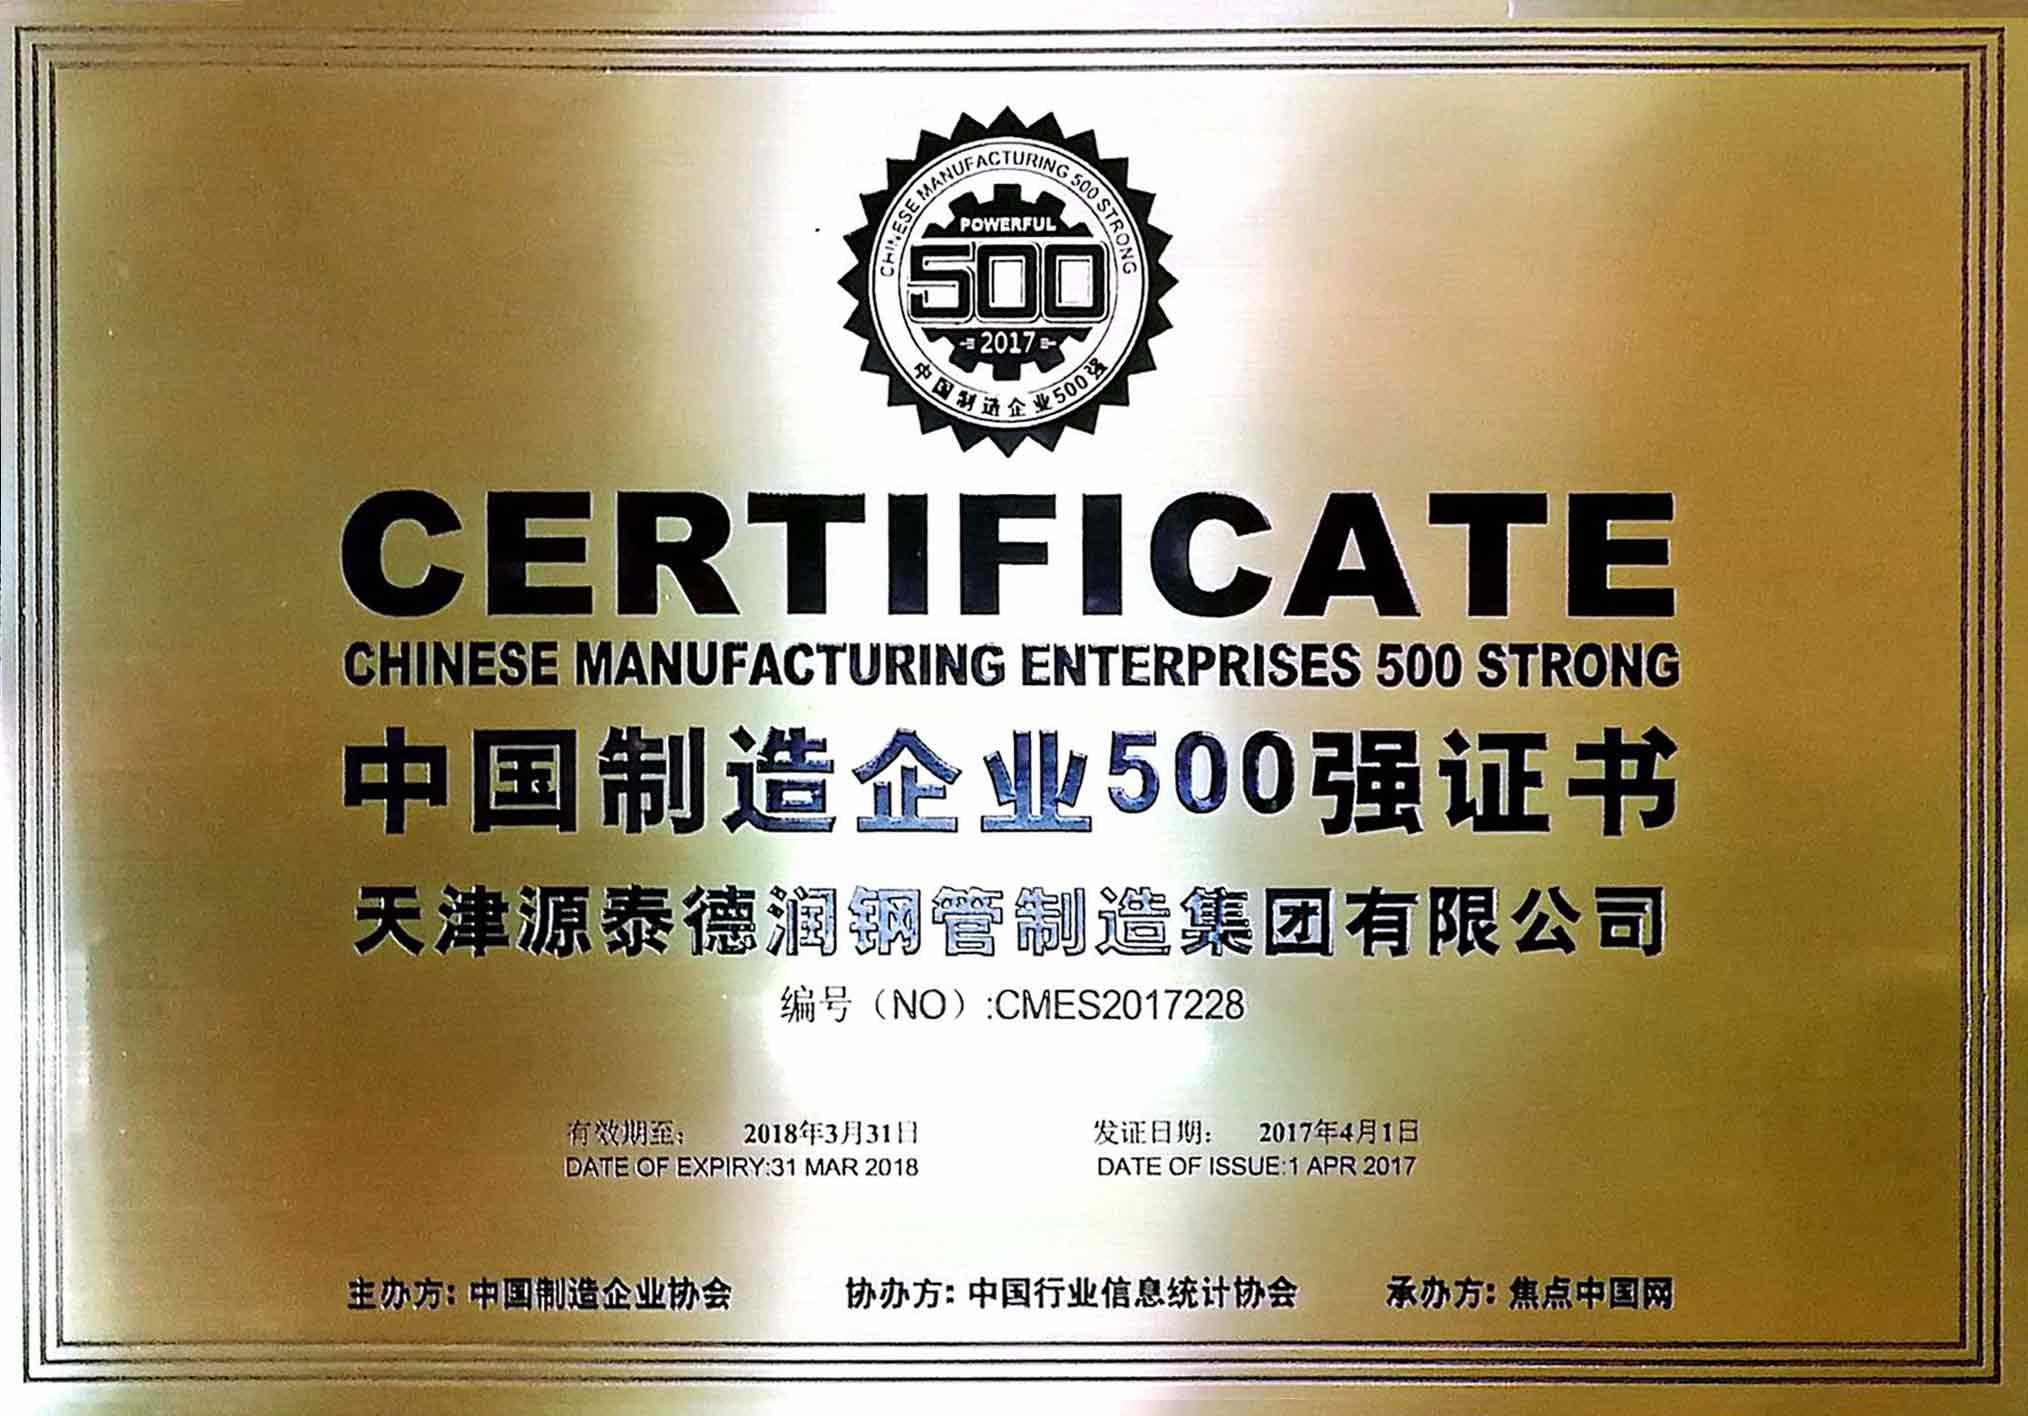 ¡OMG! A empresa HWS cadrada e rectangular entra no TOP 500 PRIVADO DE CHINA!